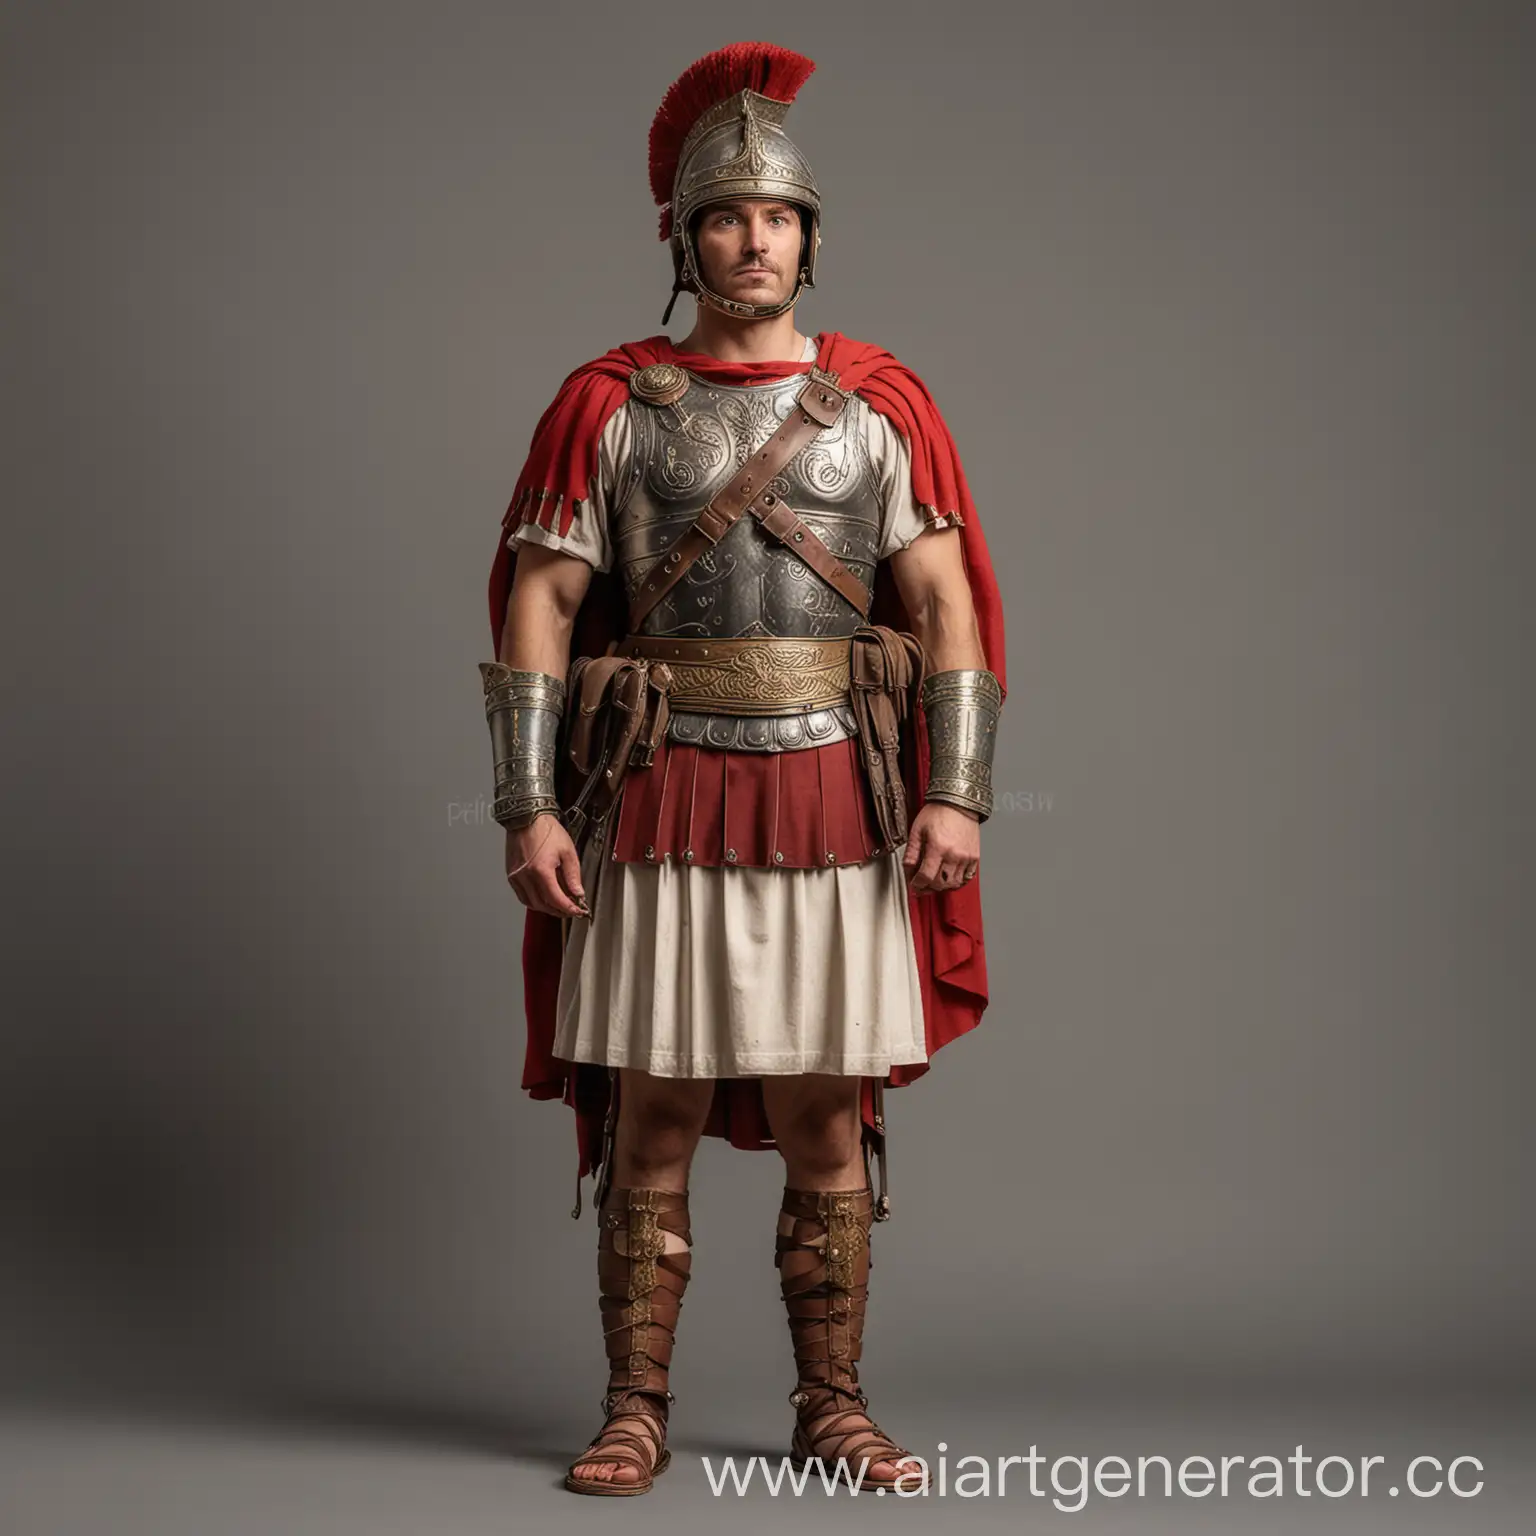 древний римлянин военный в полный рост стоит в полубок без заднего фона